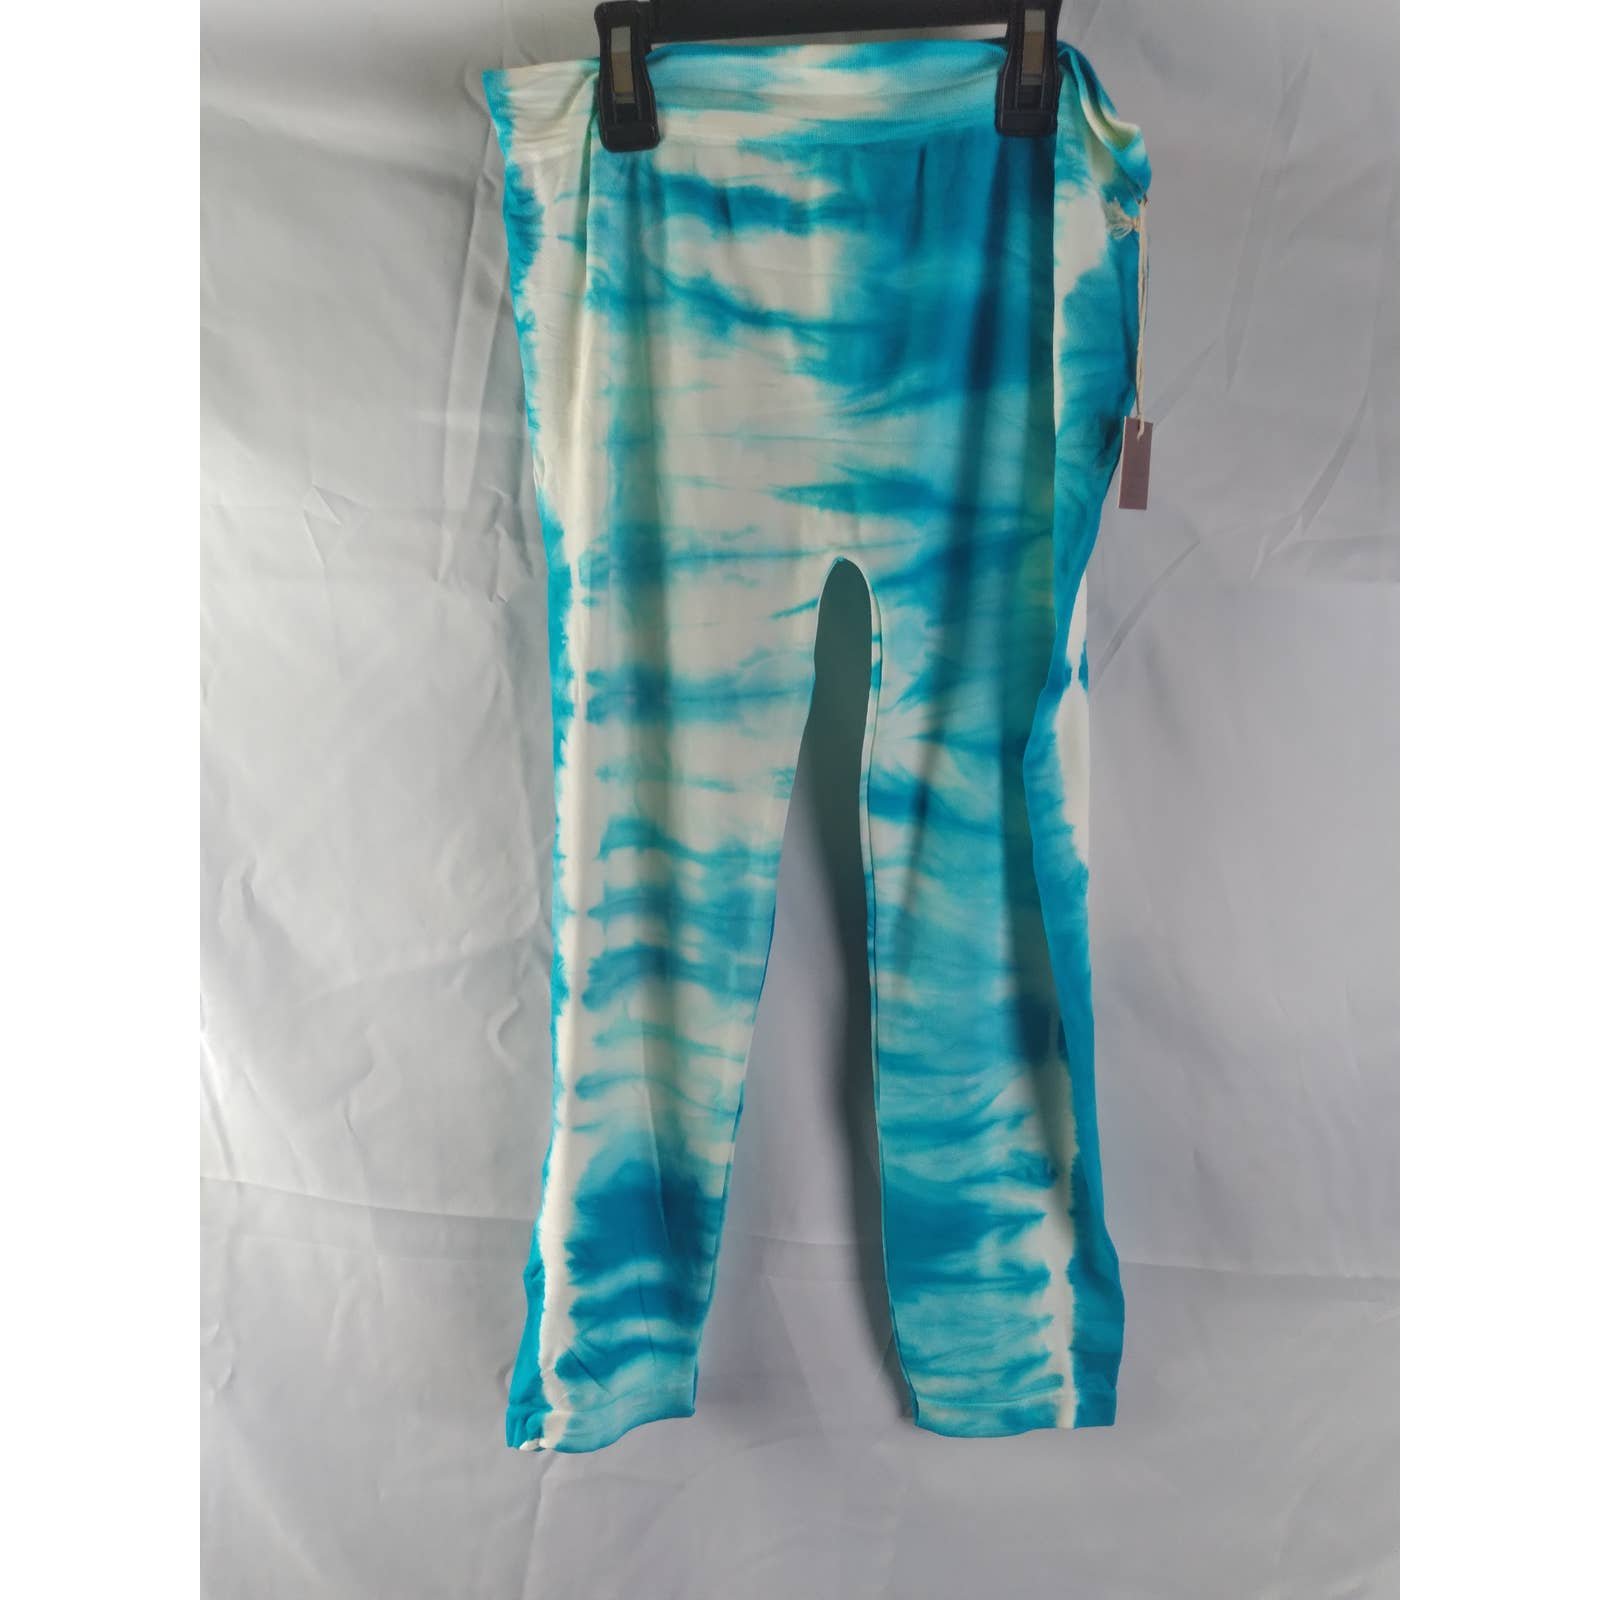 big discount Poof Blue Tie Dye Capri Leggings M/L K2N4w